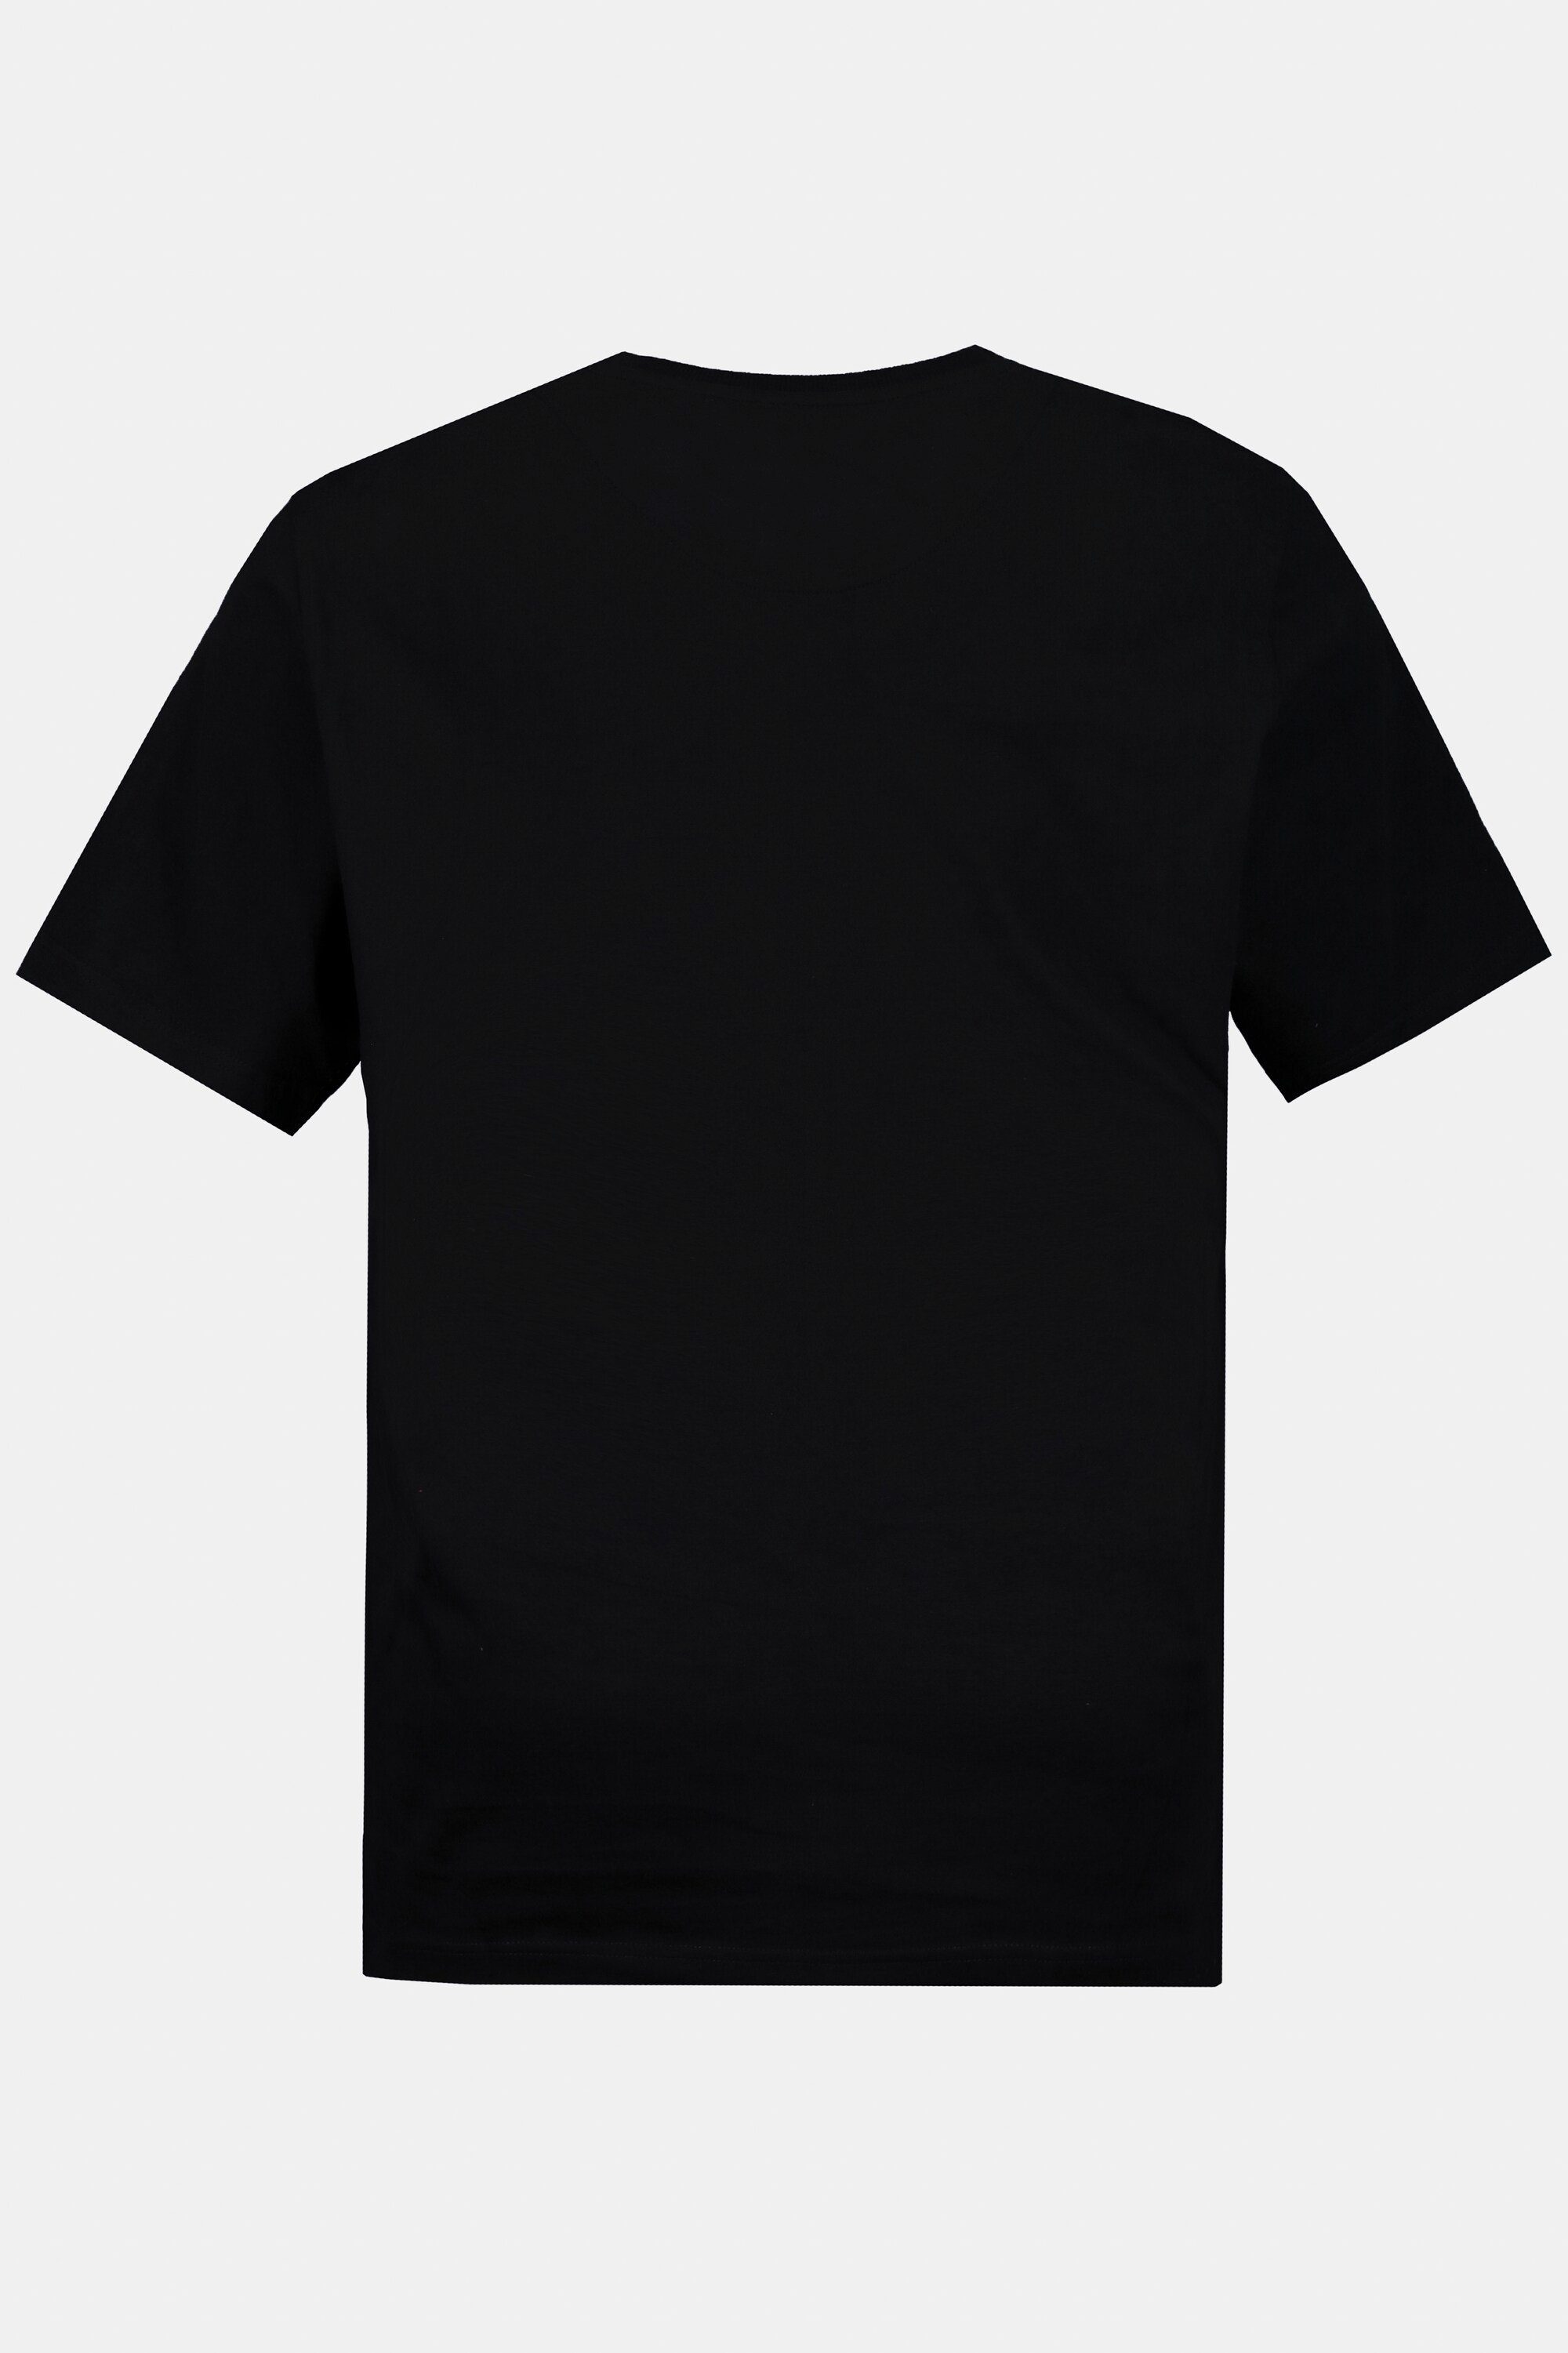 Sabbath T-Shirt Bandshirt Halbarm Black T-Shirt JP1880